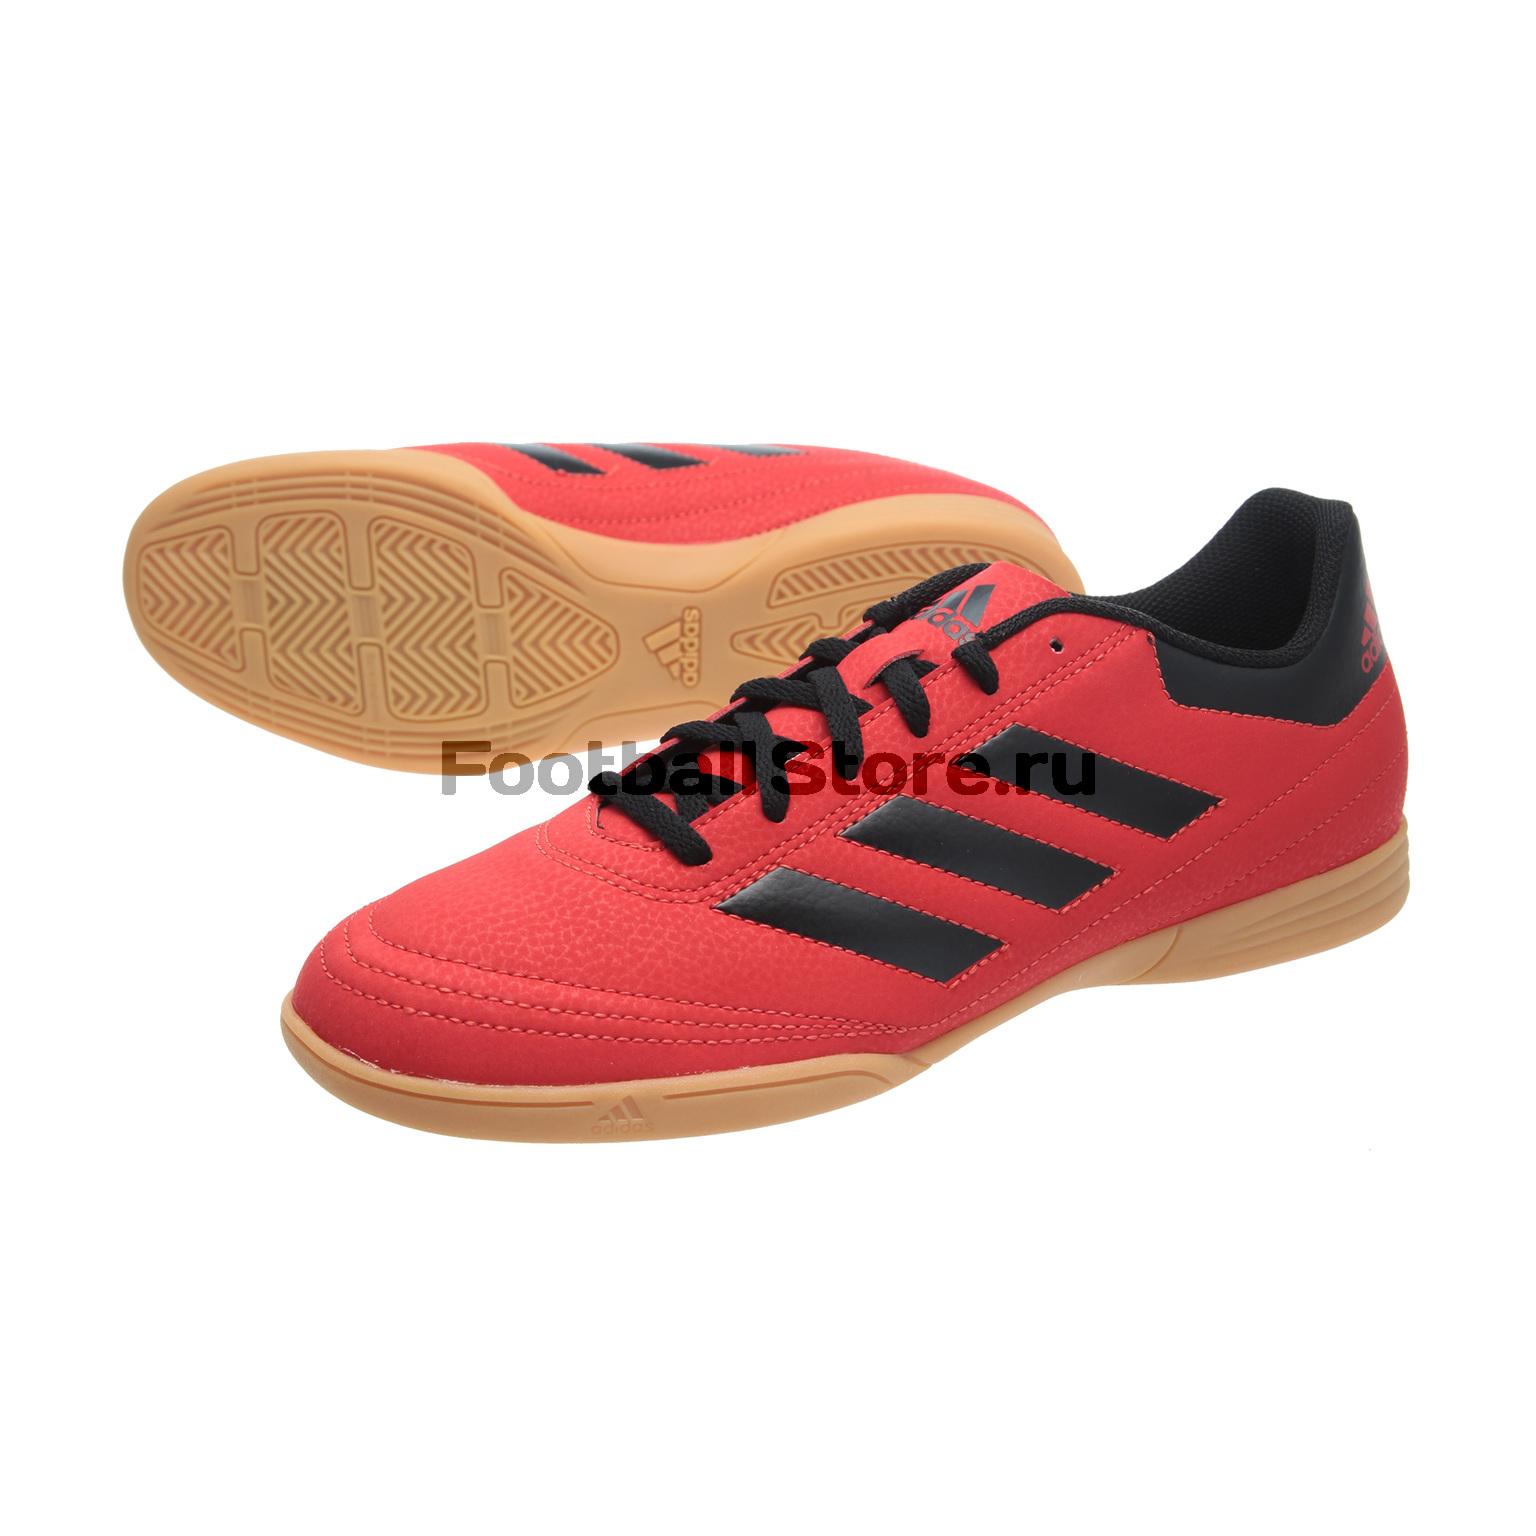 Обувь для зала Adidas Goletto VI IN S77227